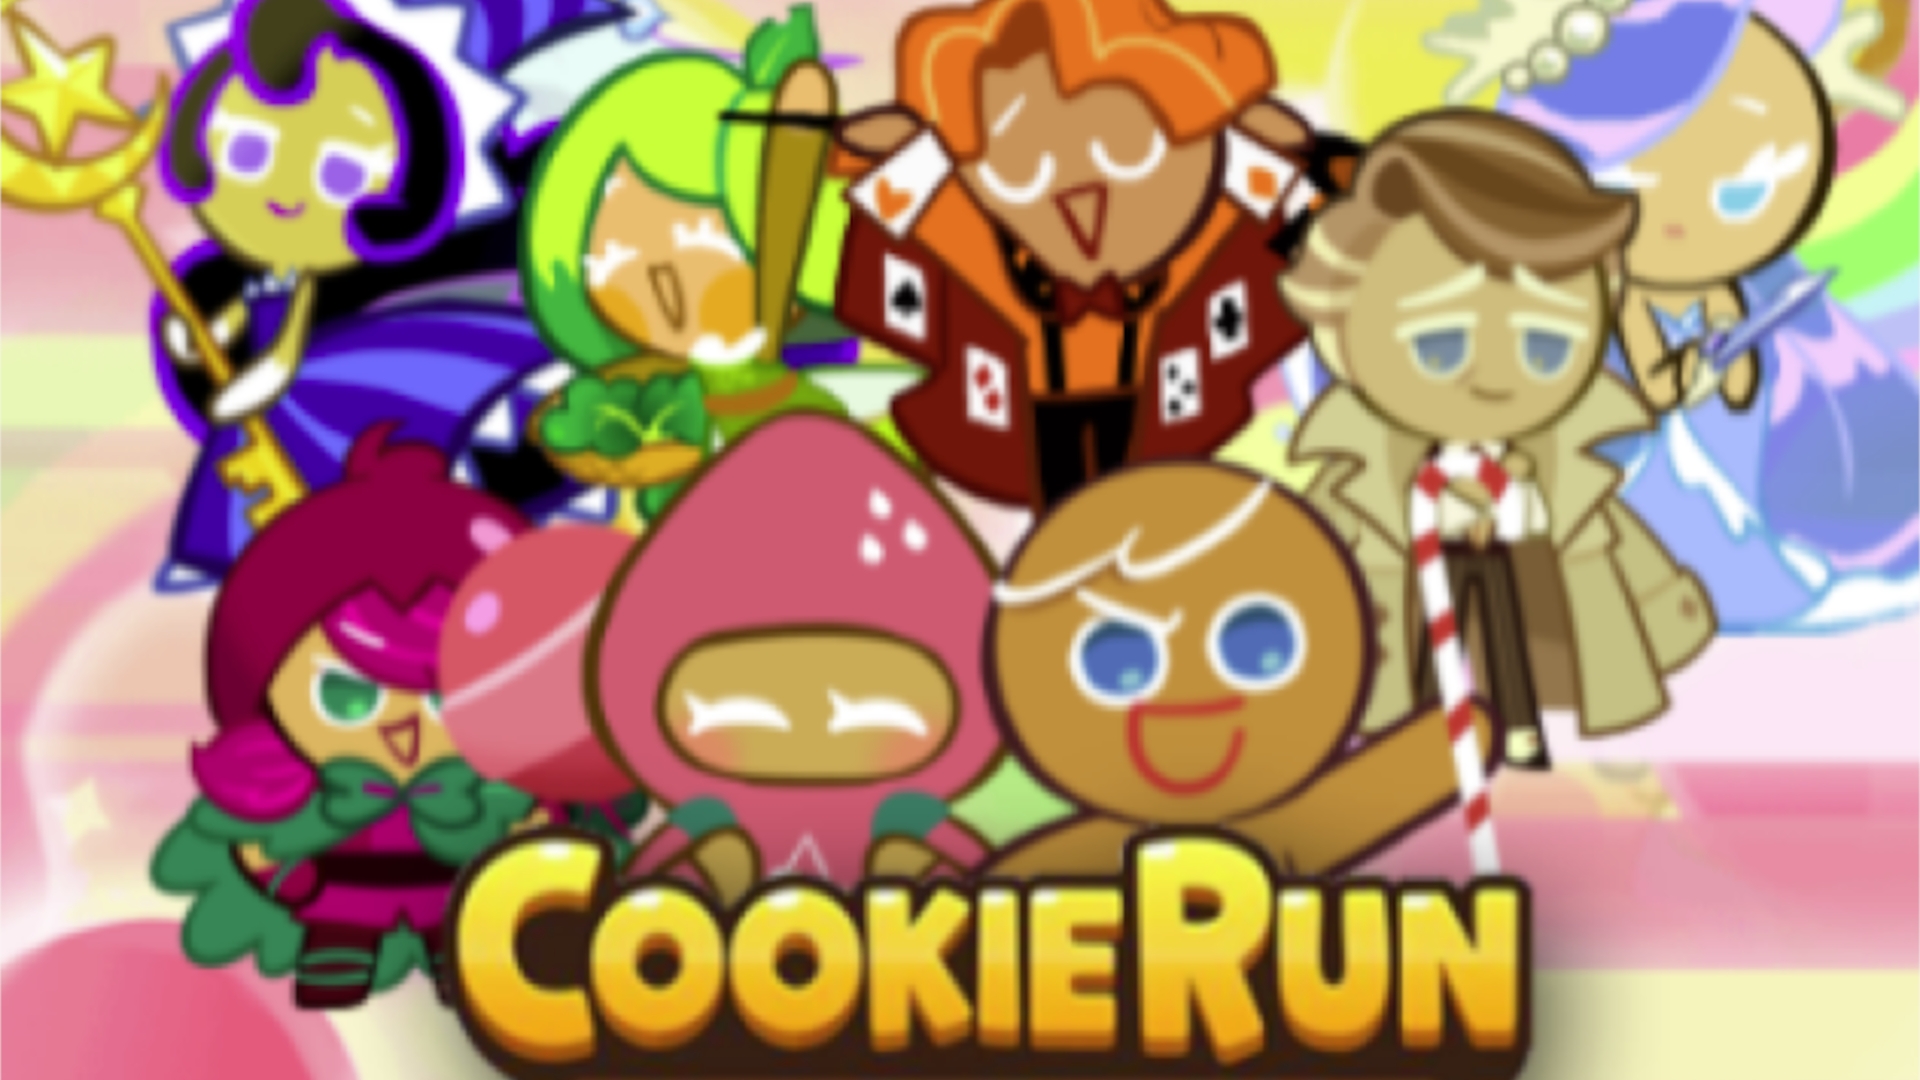 cookie run kingdom codes december 2021